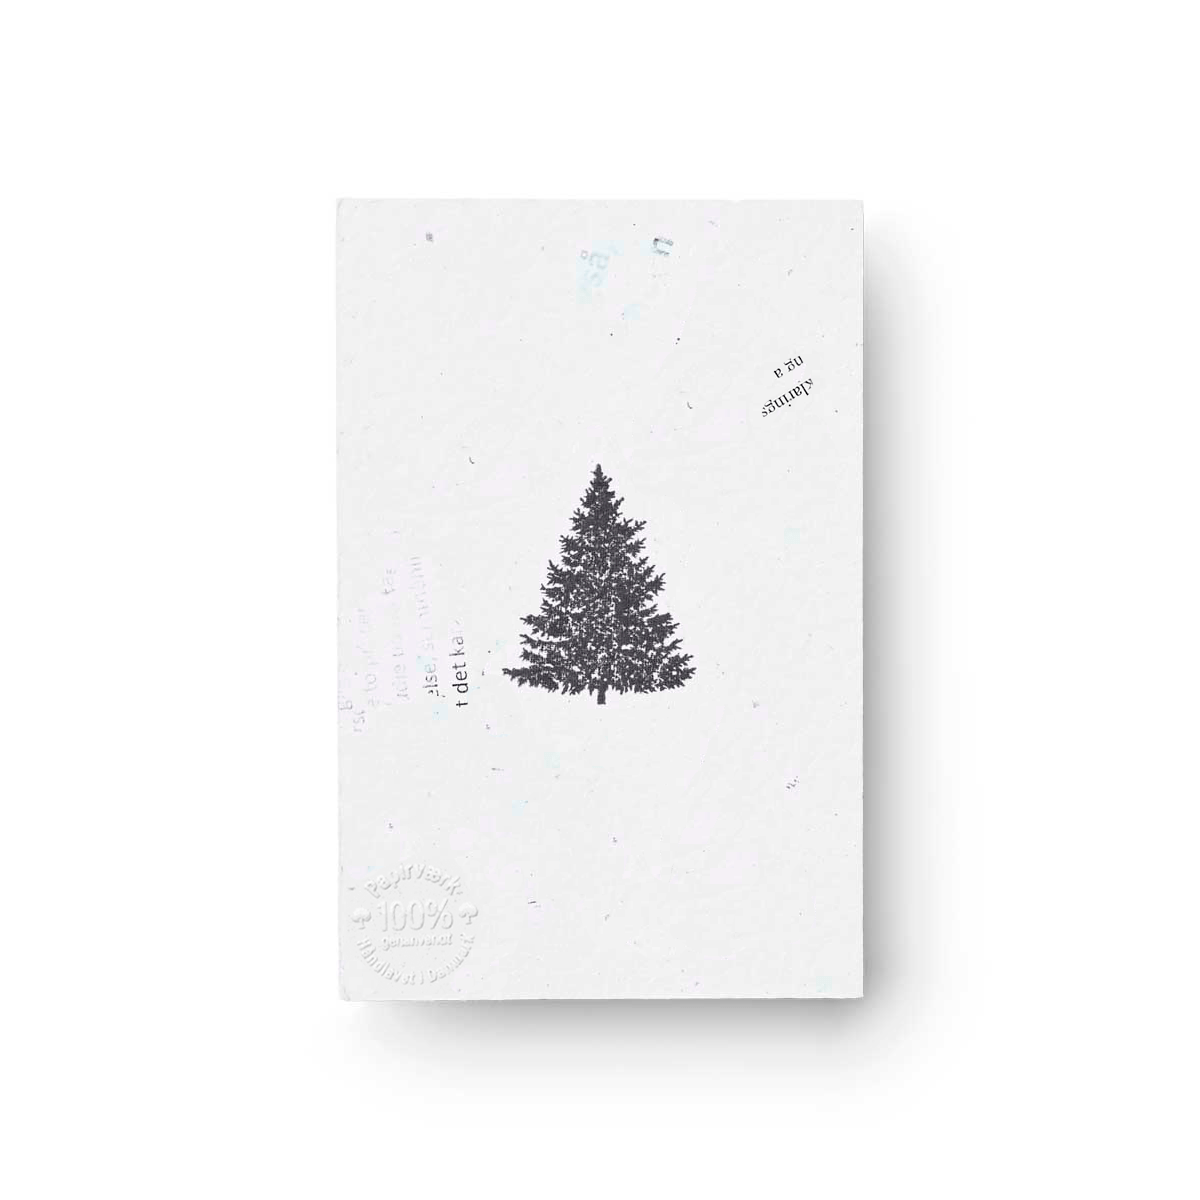 Juletræet - 3 stk (9x13,5 cm) - Papirværk